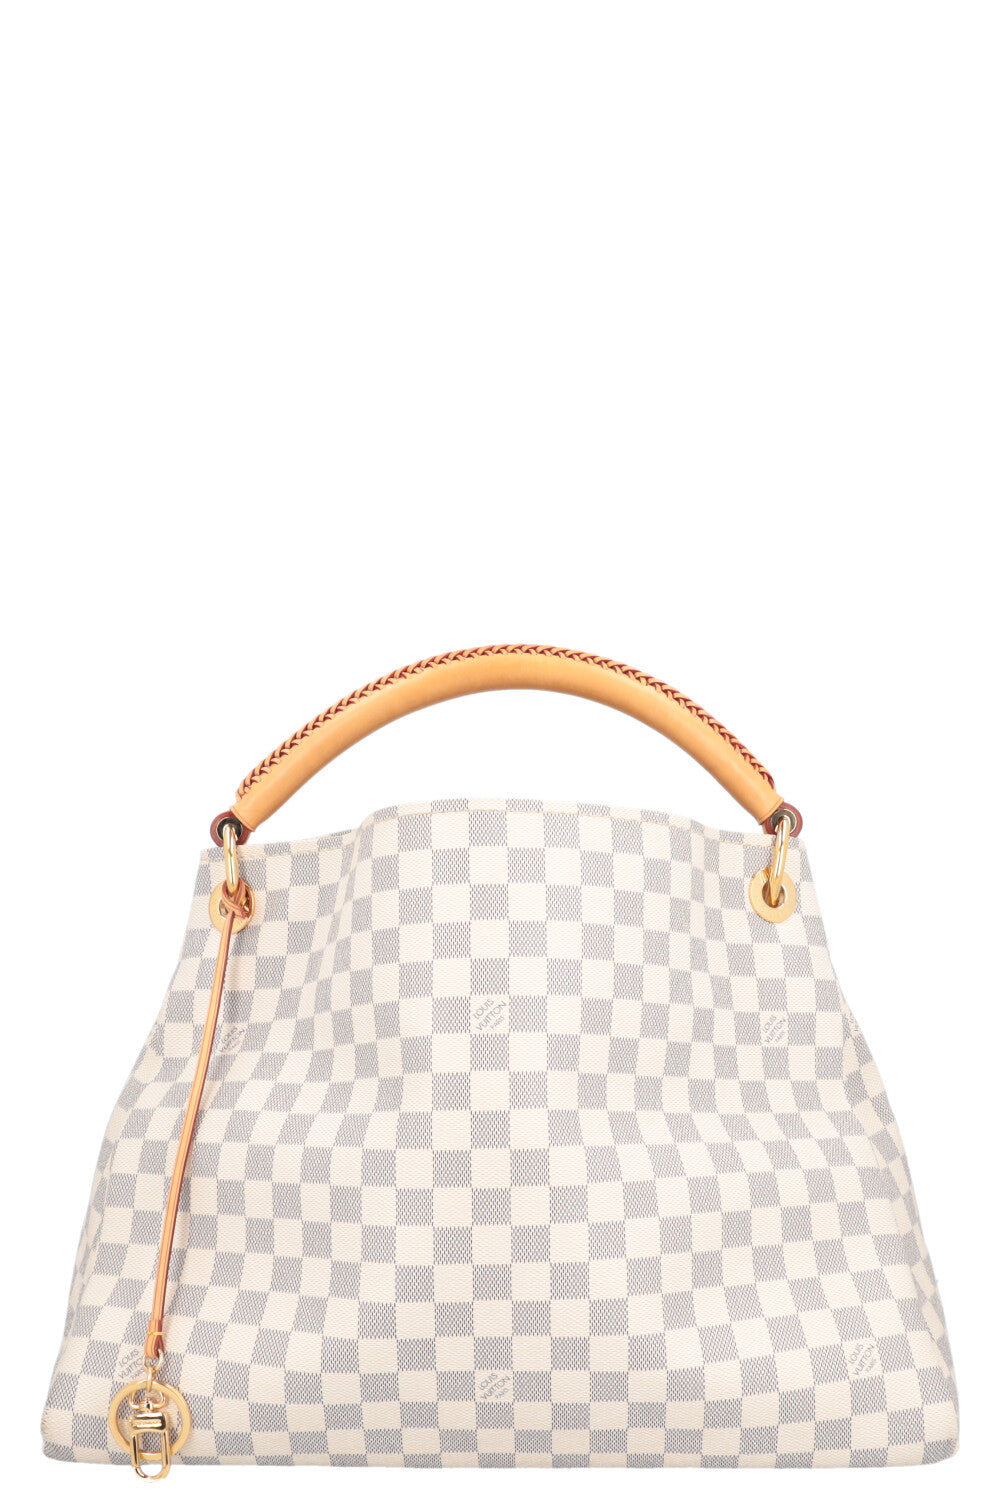 Louis Vuitton Artsy Handbag 322442